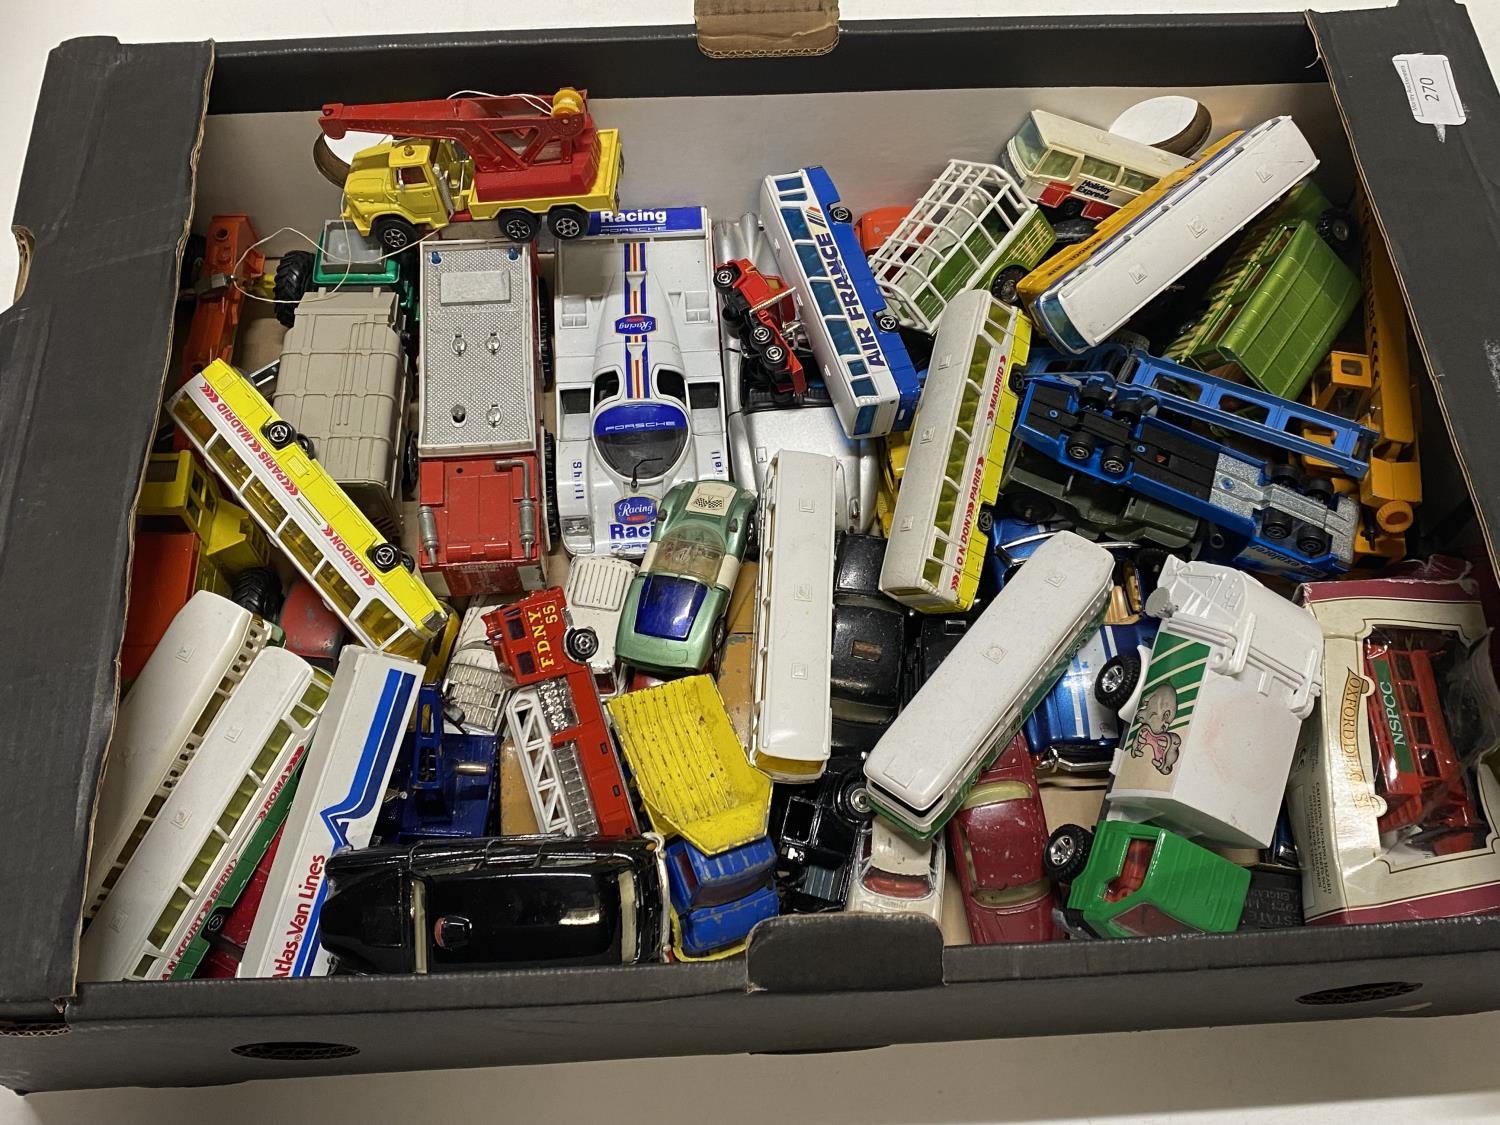 A box of assorted die-cast models including Corgi, Dinky etc